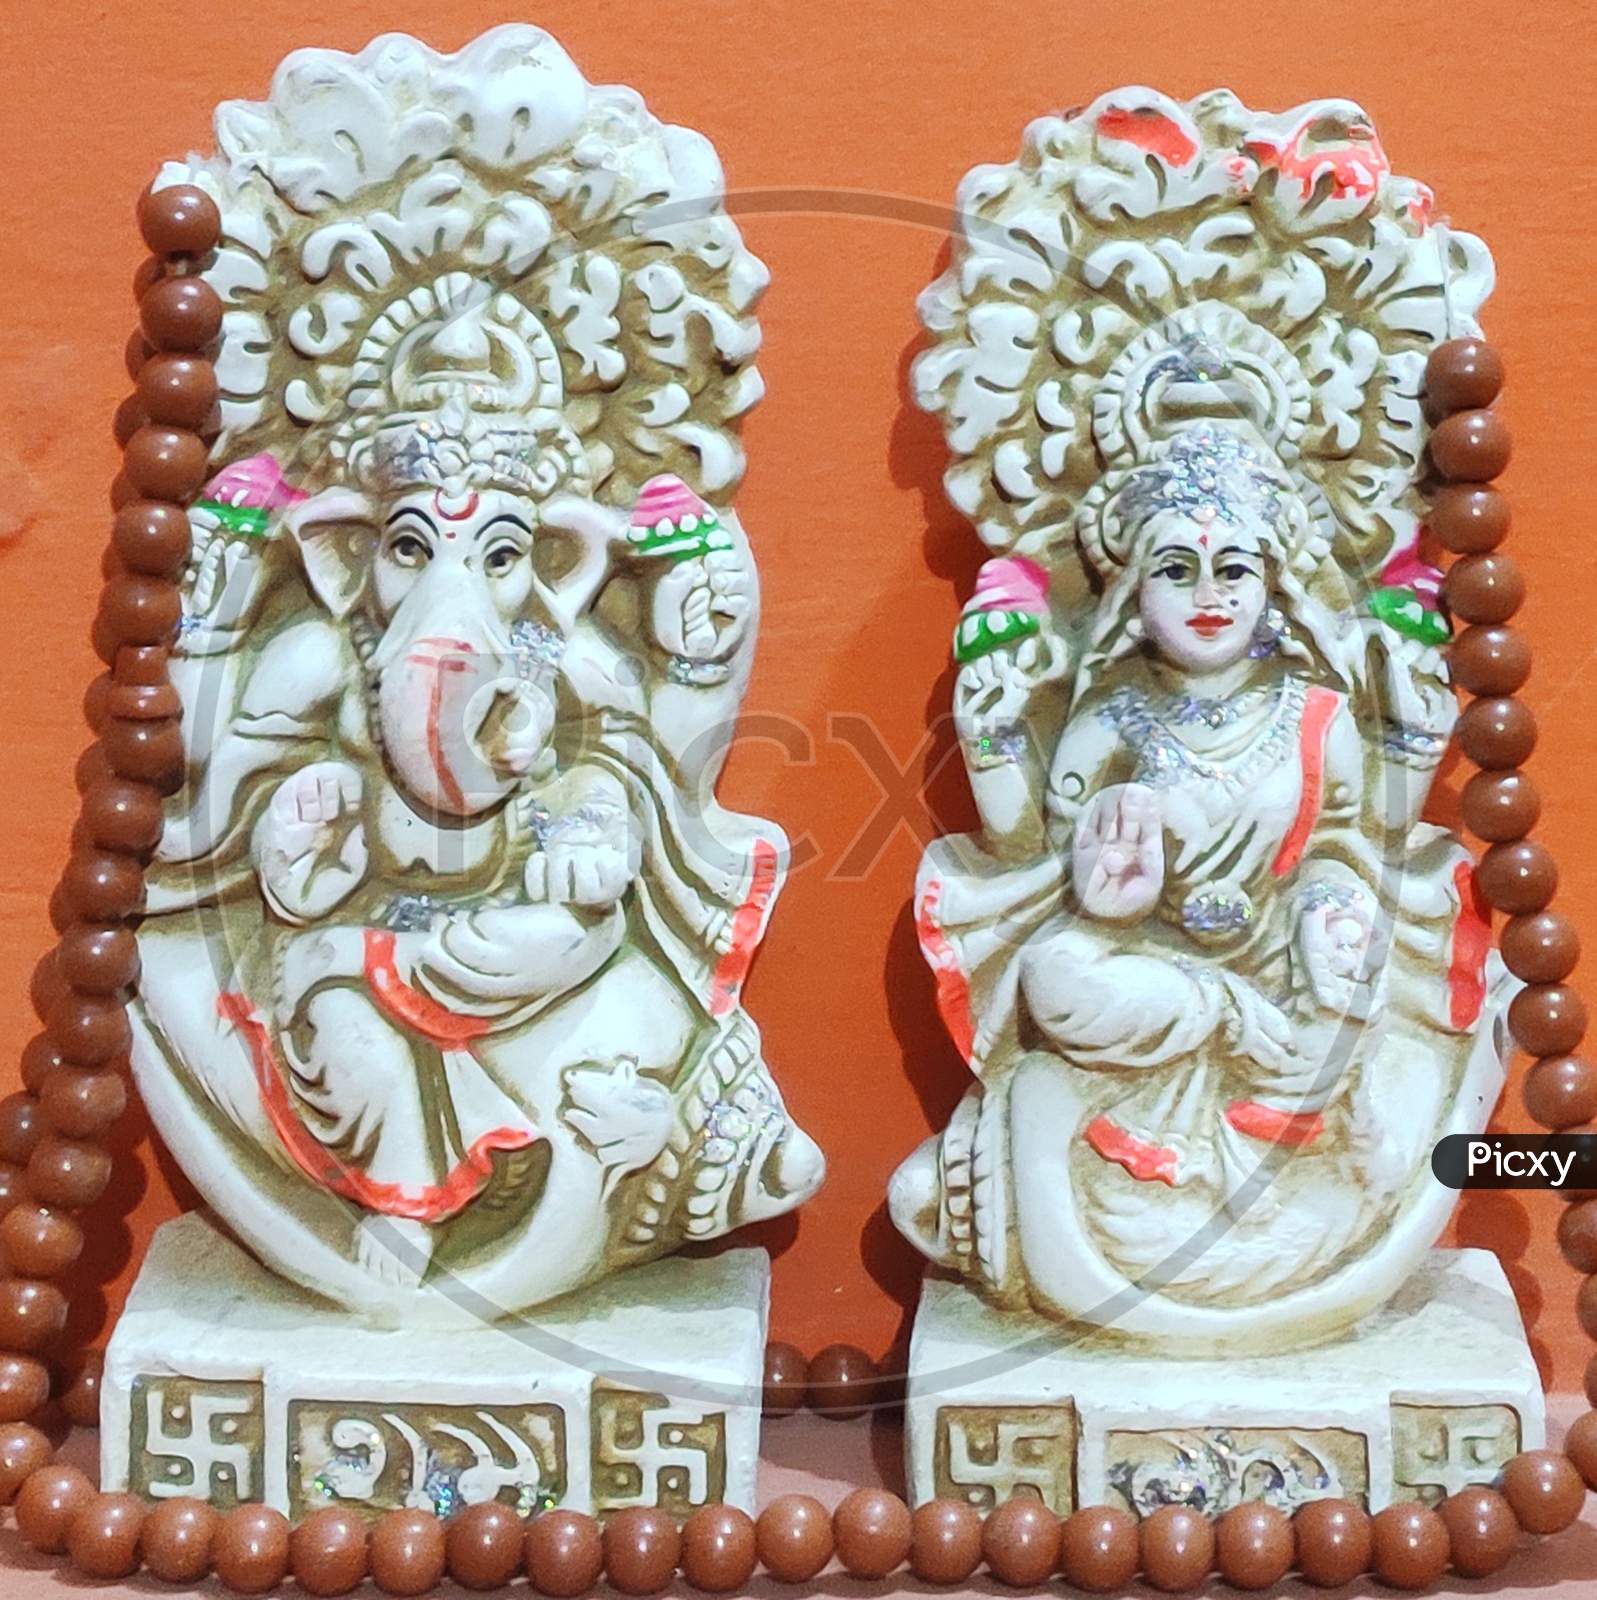 Sculpture of Lord Ganesha and mata laxmi